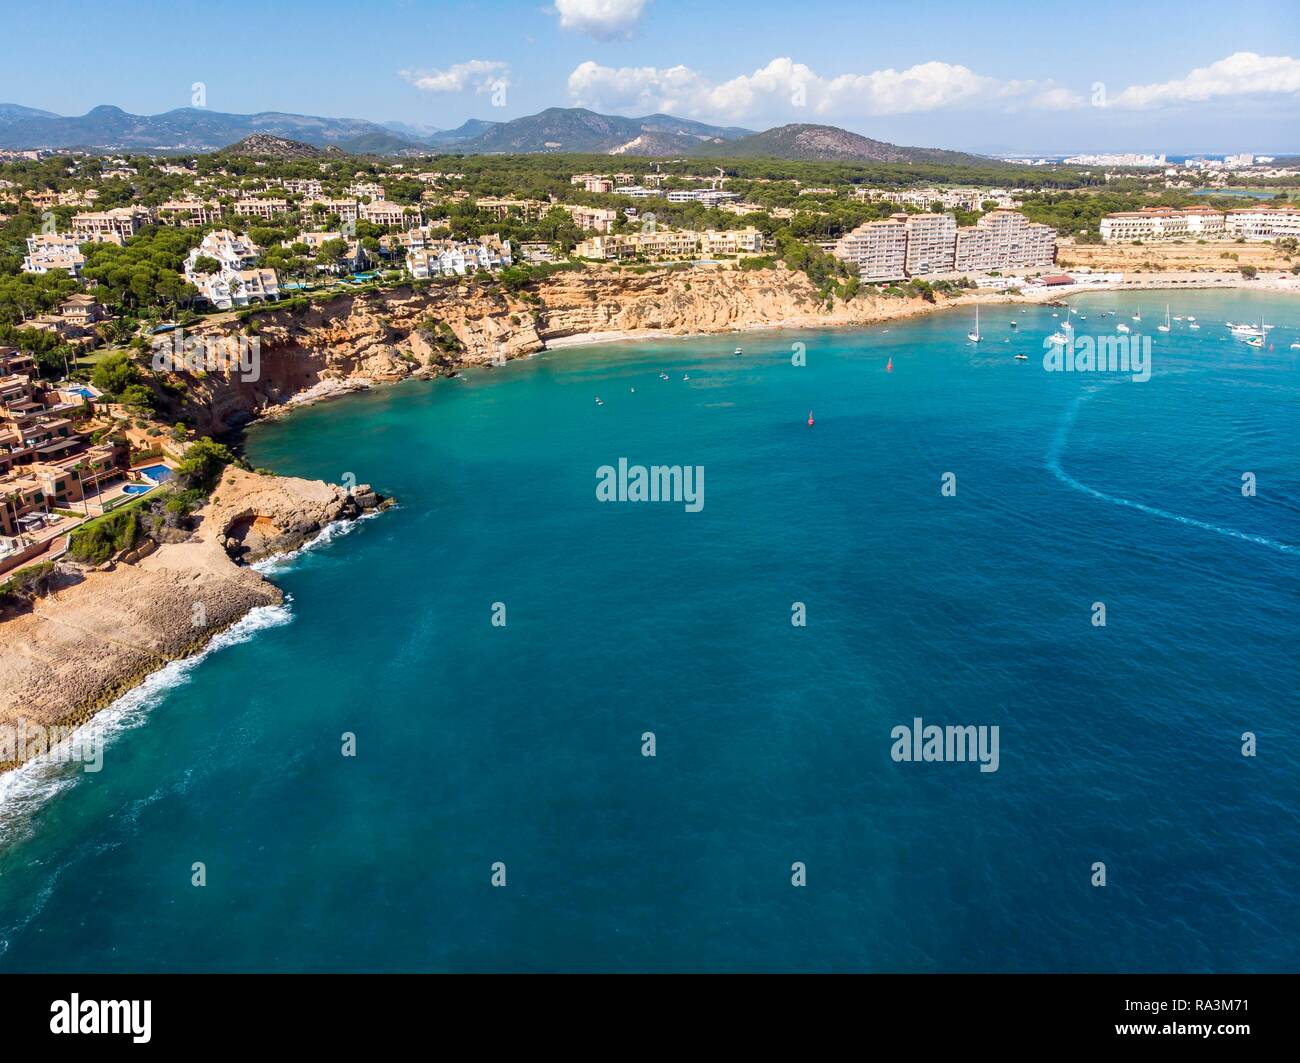 Aerial view, rocky coast and marina Port Adriano, El Toro, Santa Ponca region, Majorca, Balearic Islands, Spain Stock Photo